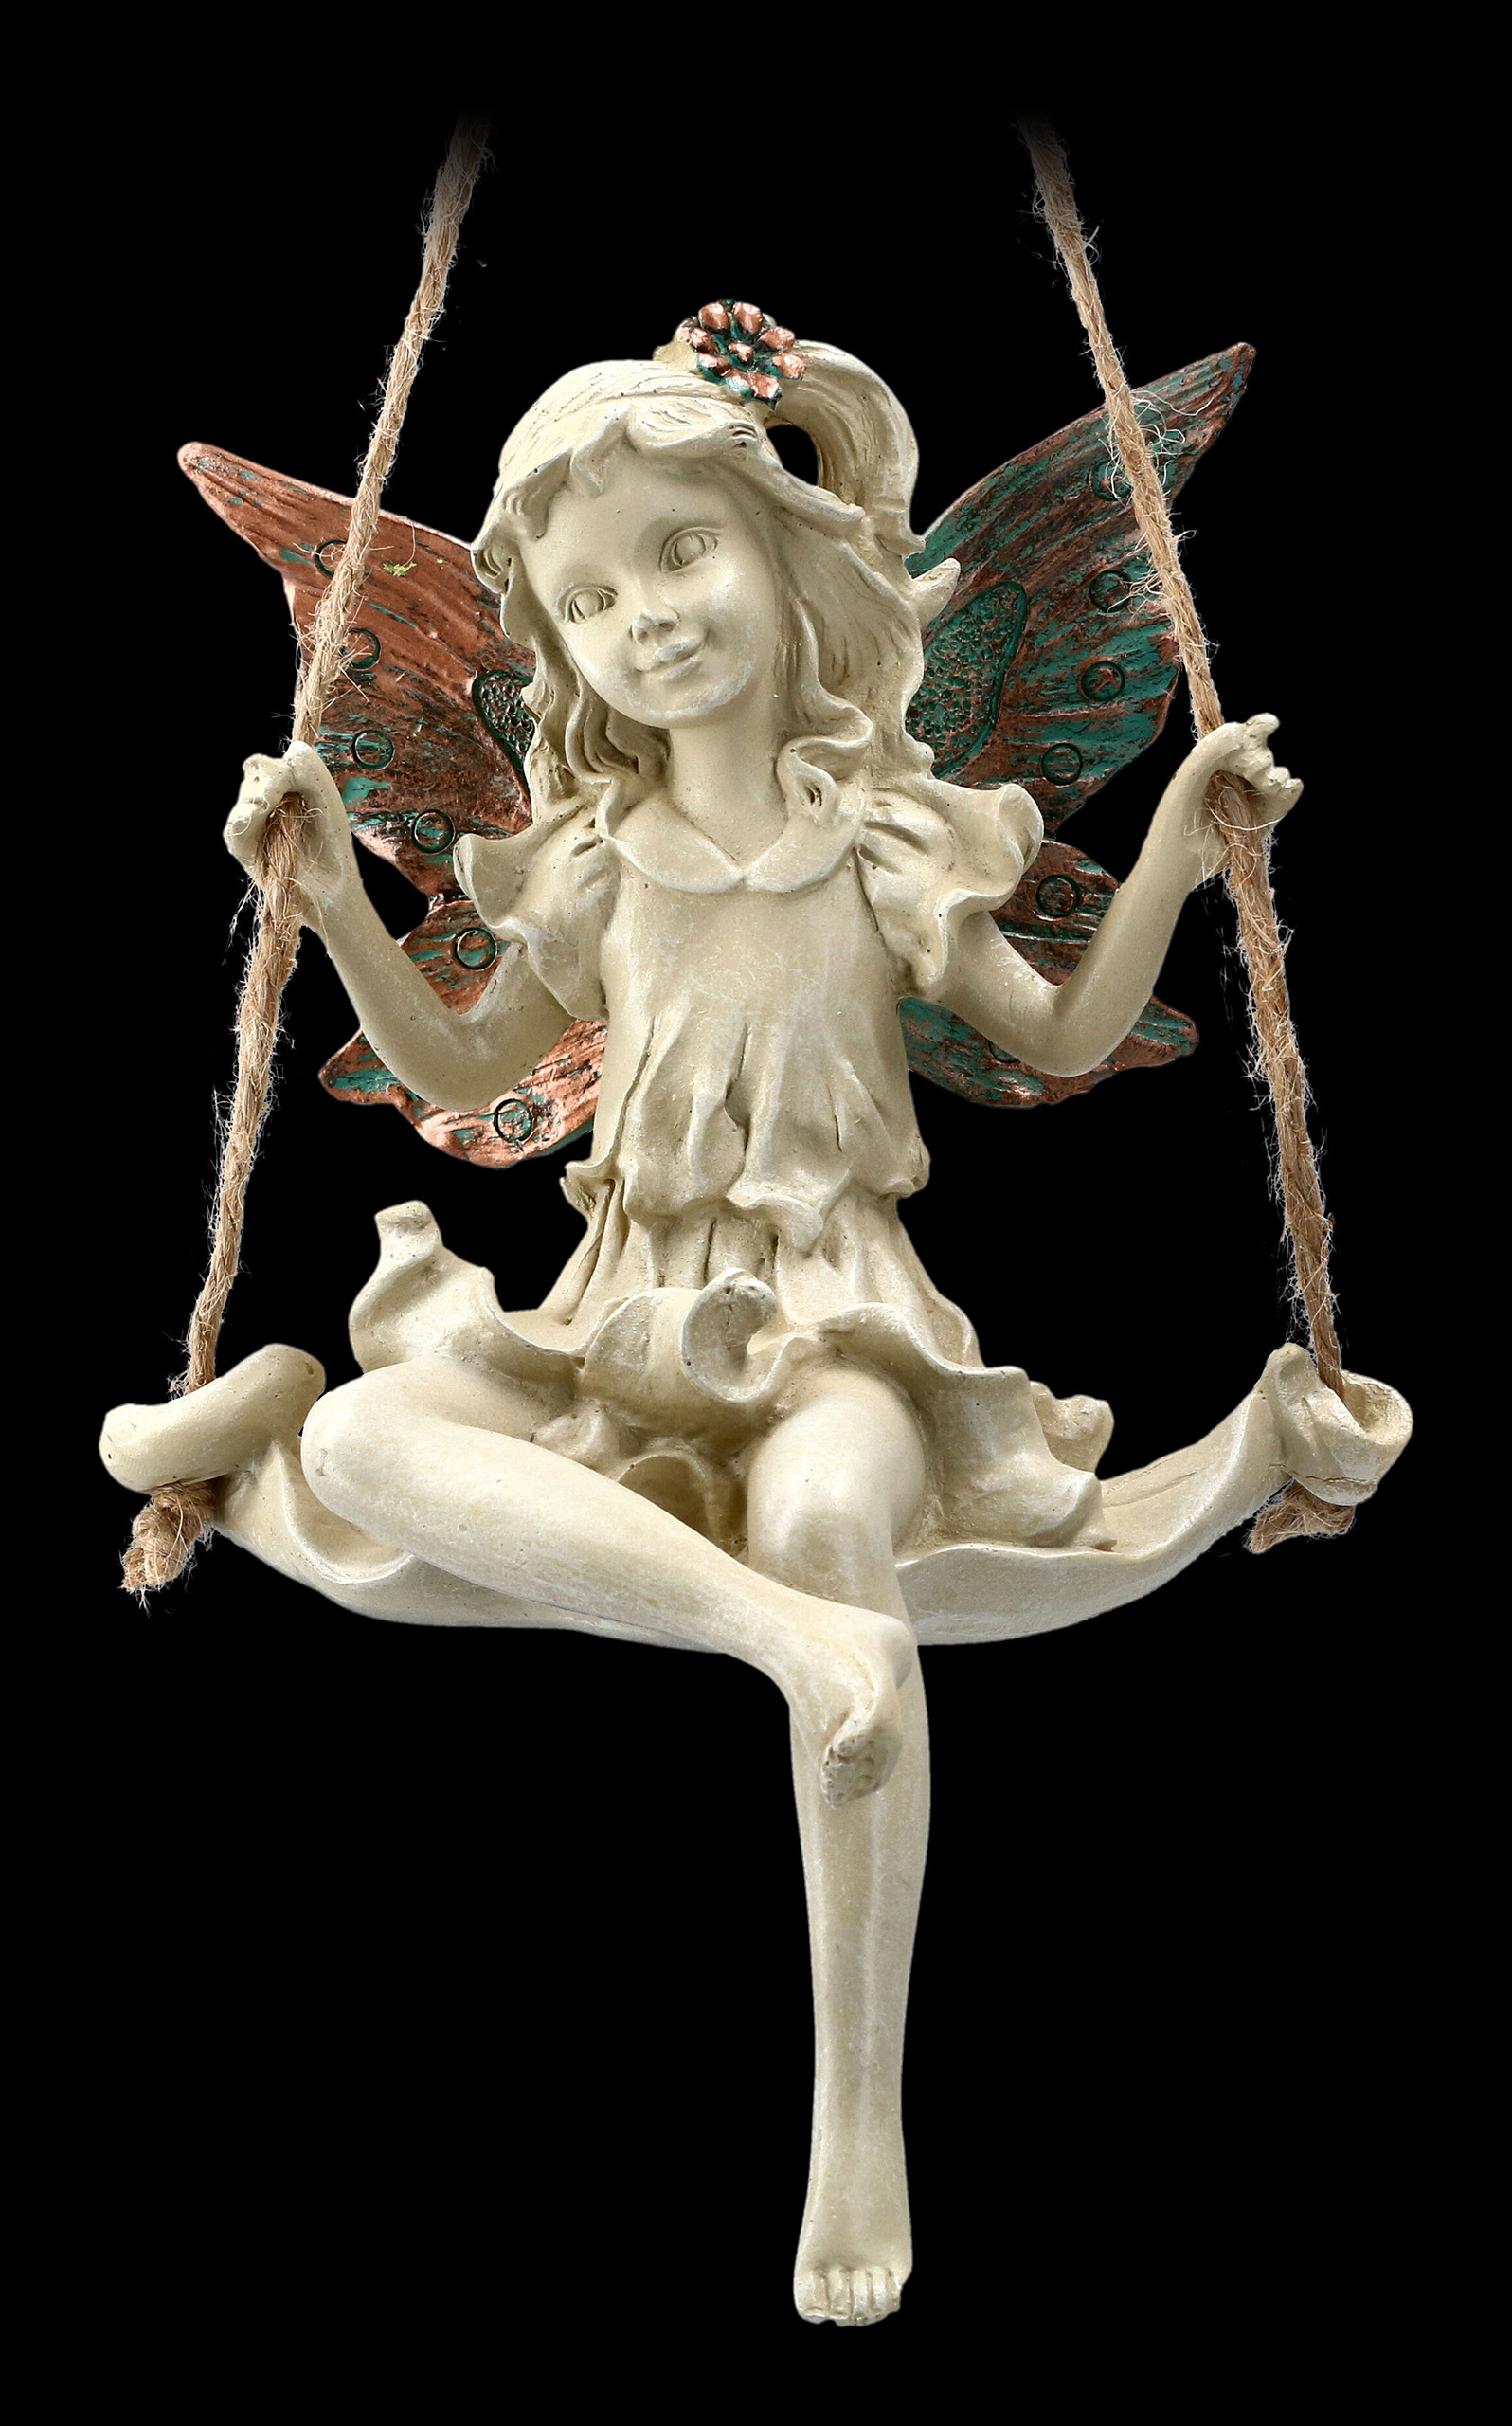 Forest Fairy Seil zum Aufhängen Swing Kupfer geflügelten weiß Figur Skulptur Art Deco Girl Garden Home Decor Geschenk 19